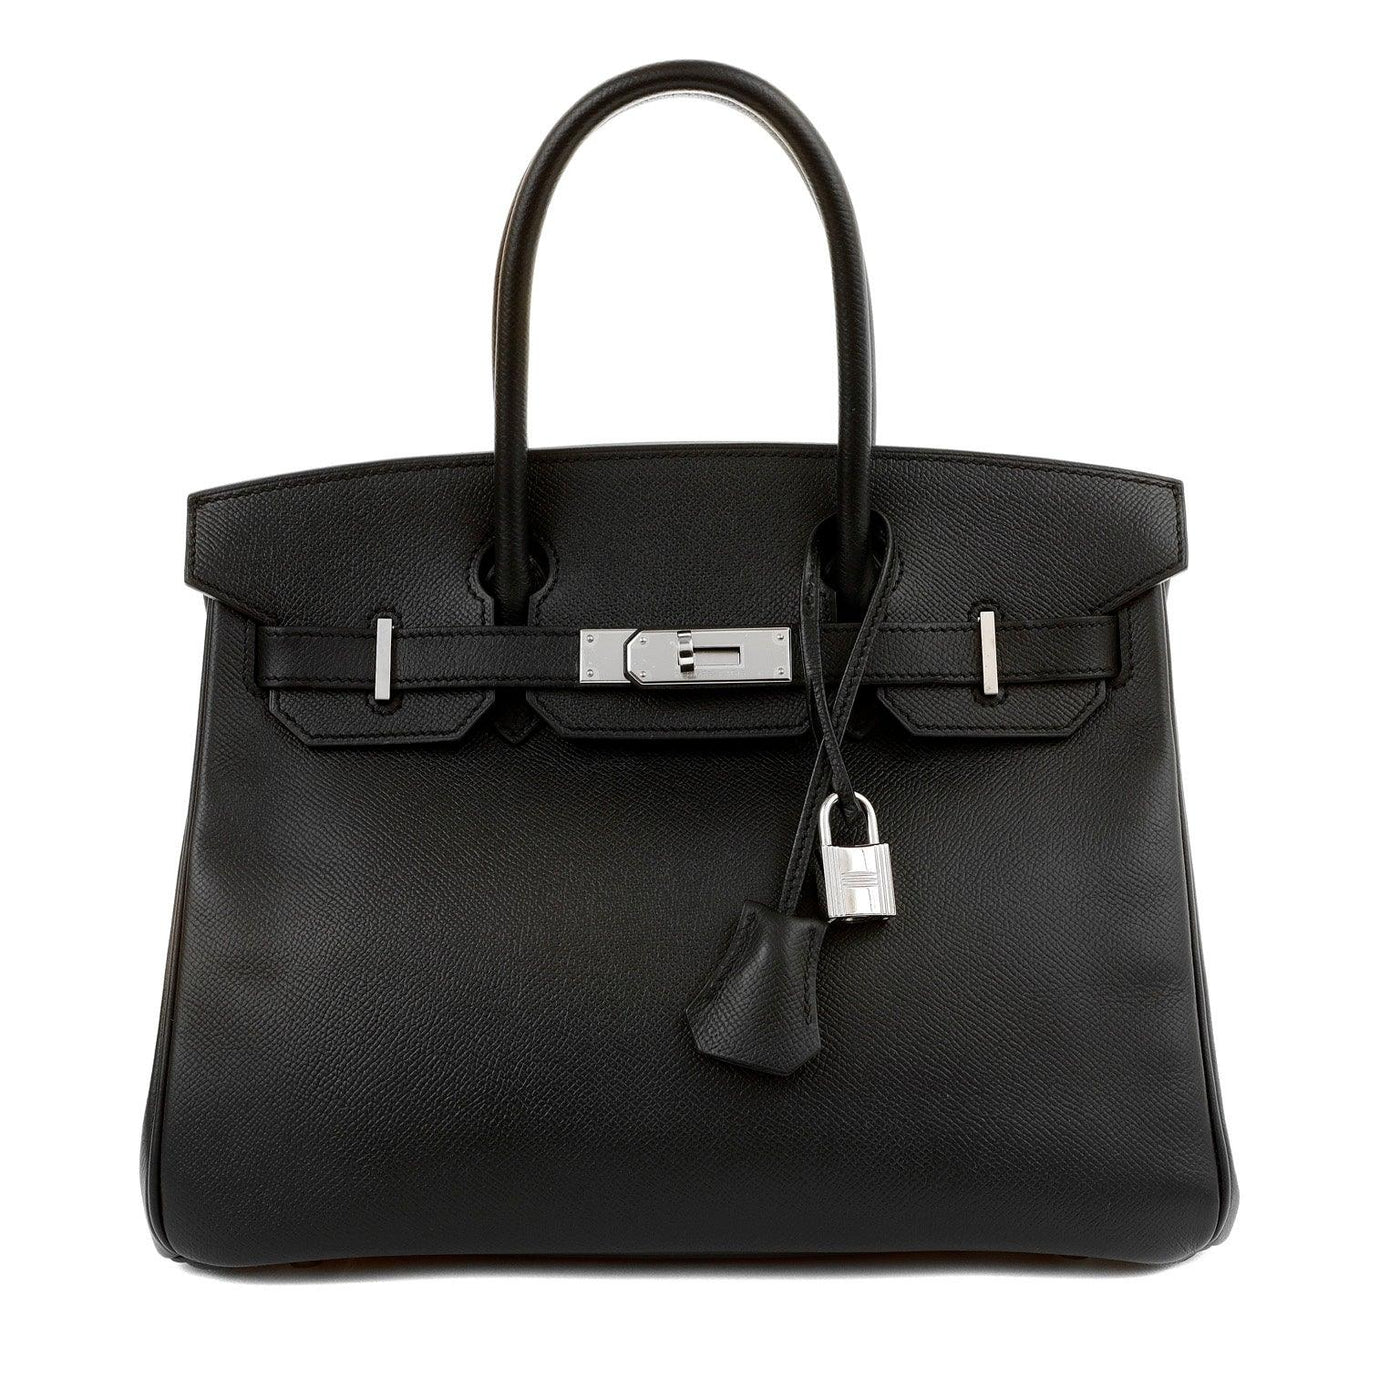 Hermès 30cm Black Epsom Birkin with Palladium Hardware - Only Authentics